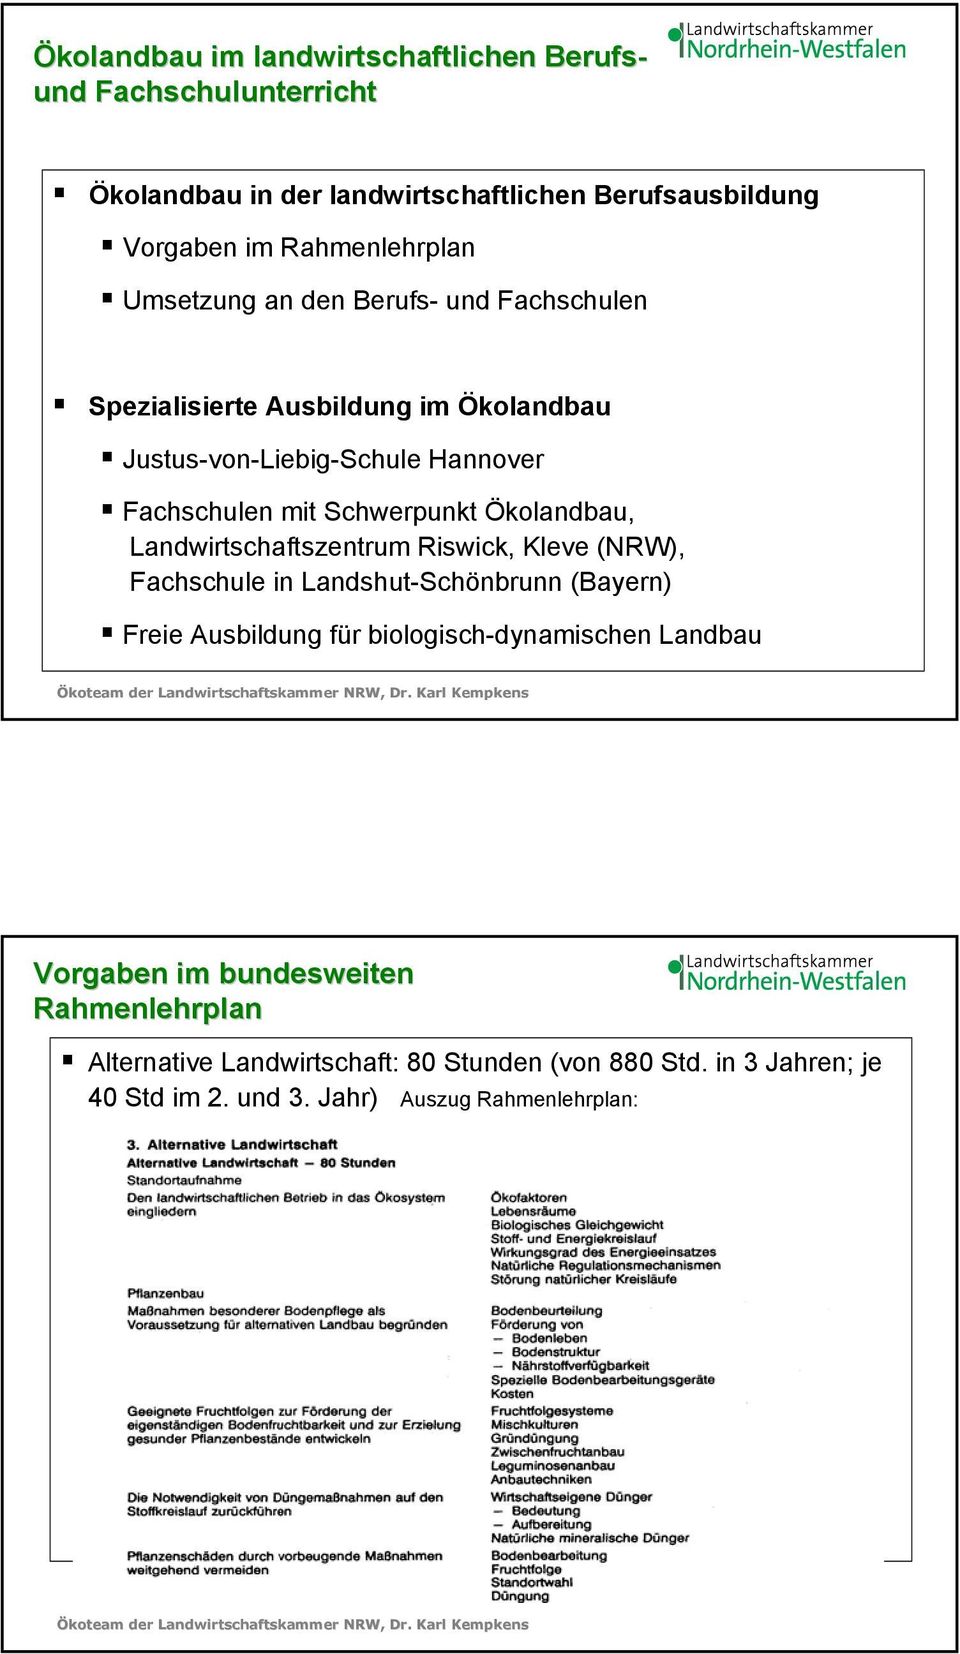 Ökolandbau, Landwirtschaftszentrum Riswick, Kleve (NRW), Fachschule in Landshut-Schönbrunn (Bayern) Freie Ausbildung für biologisch-dynamischen